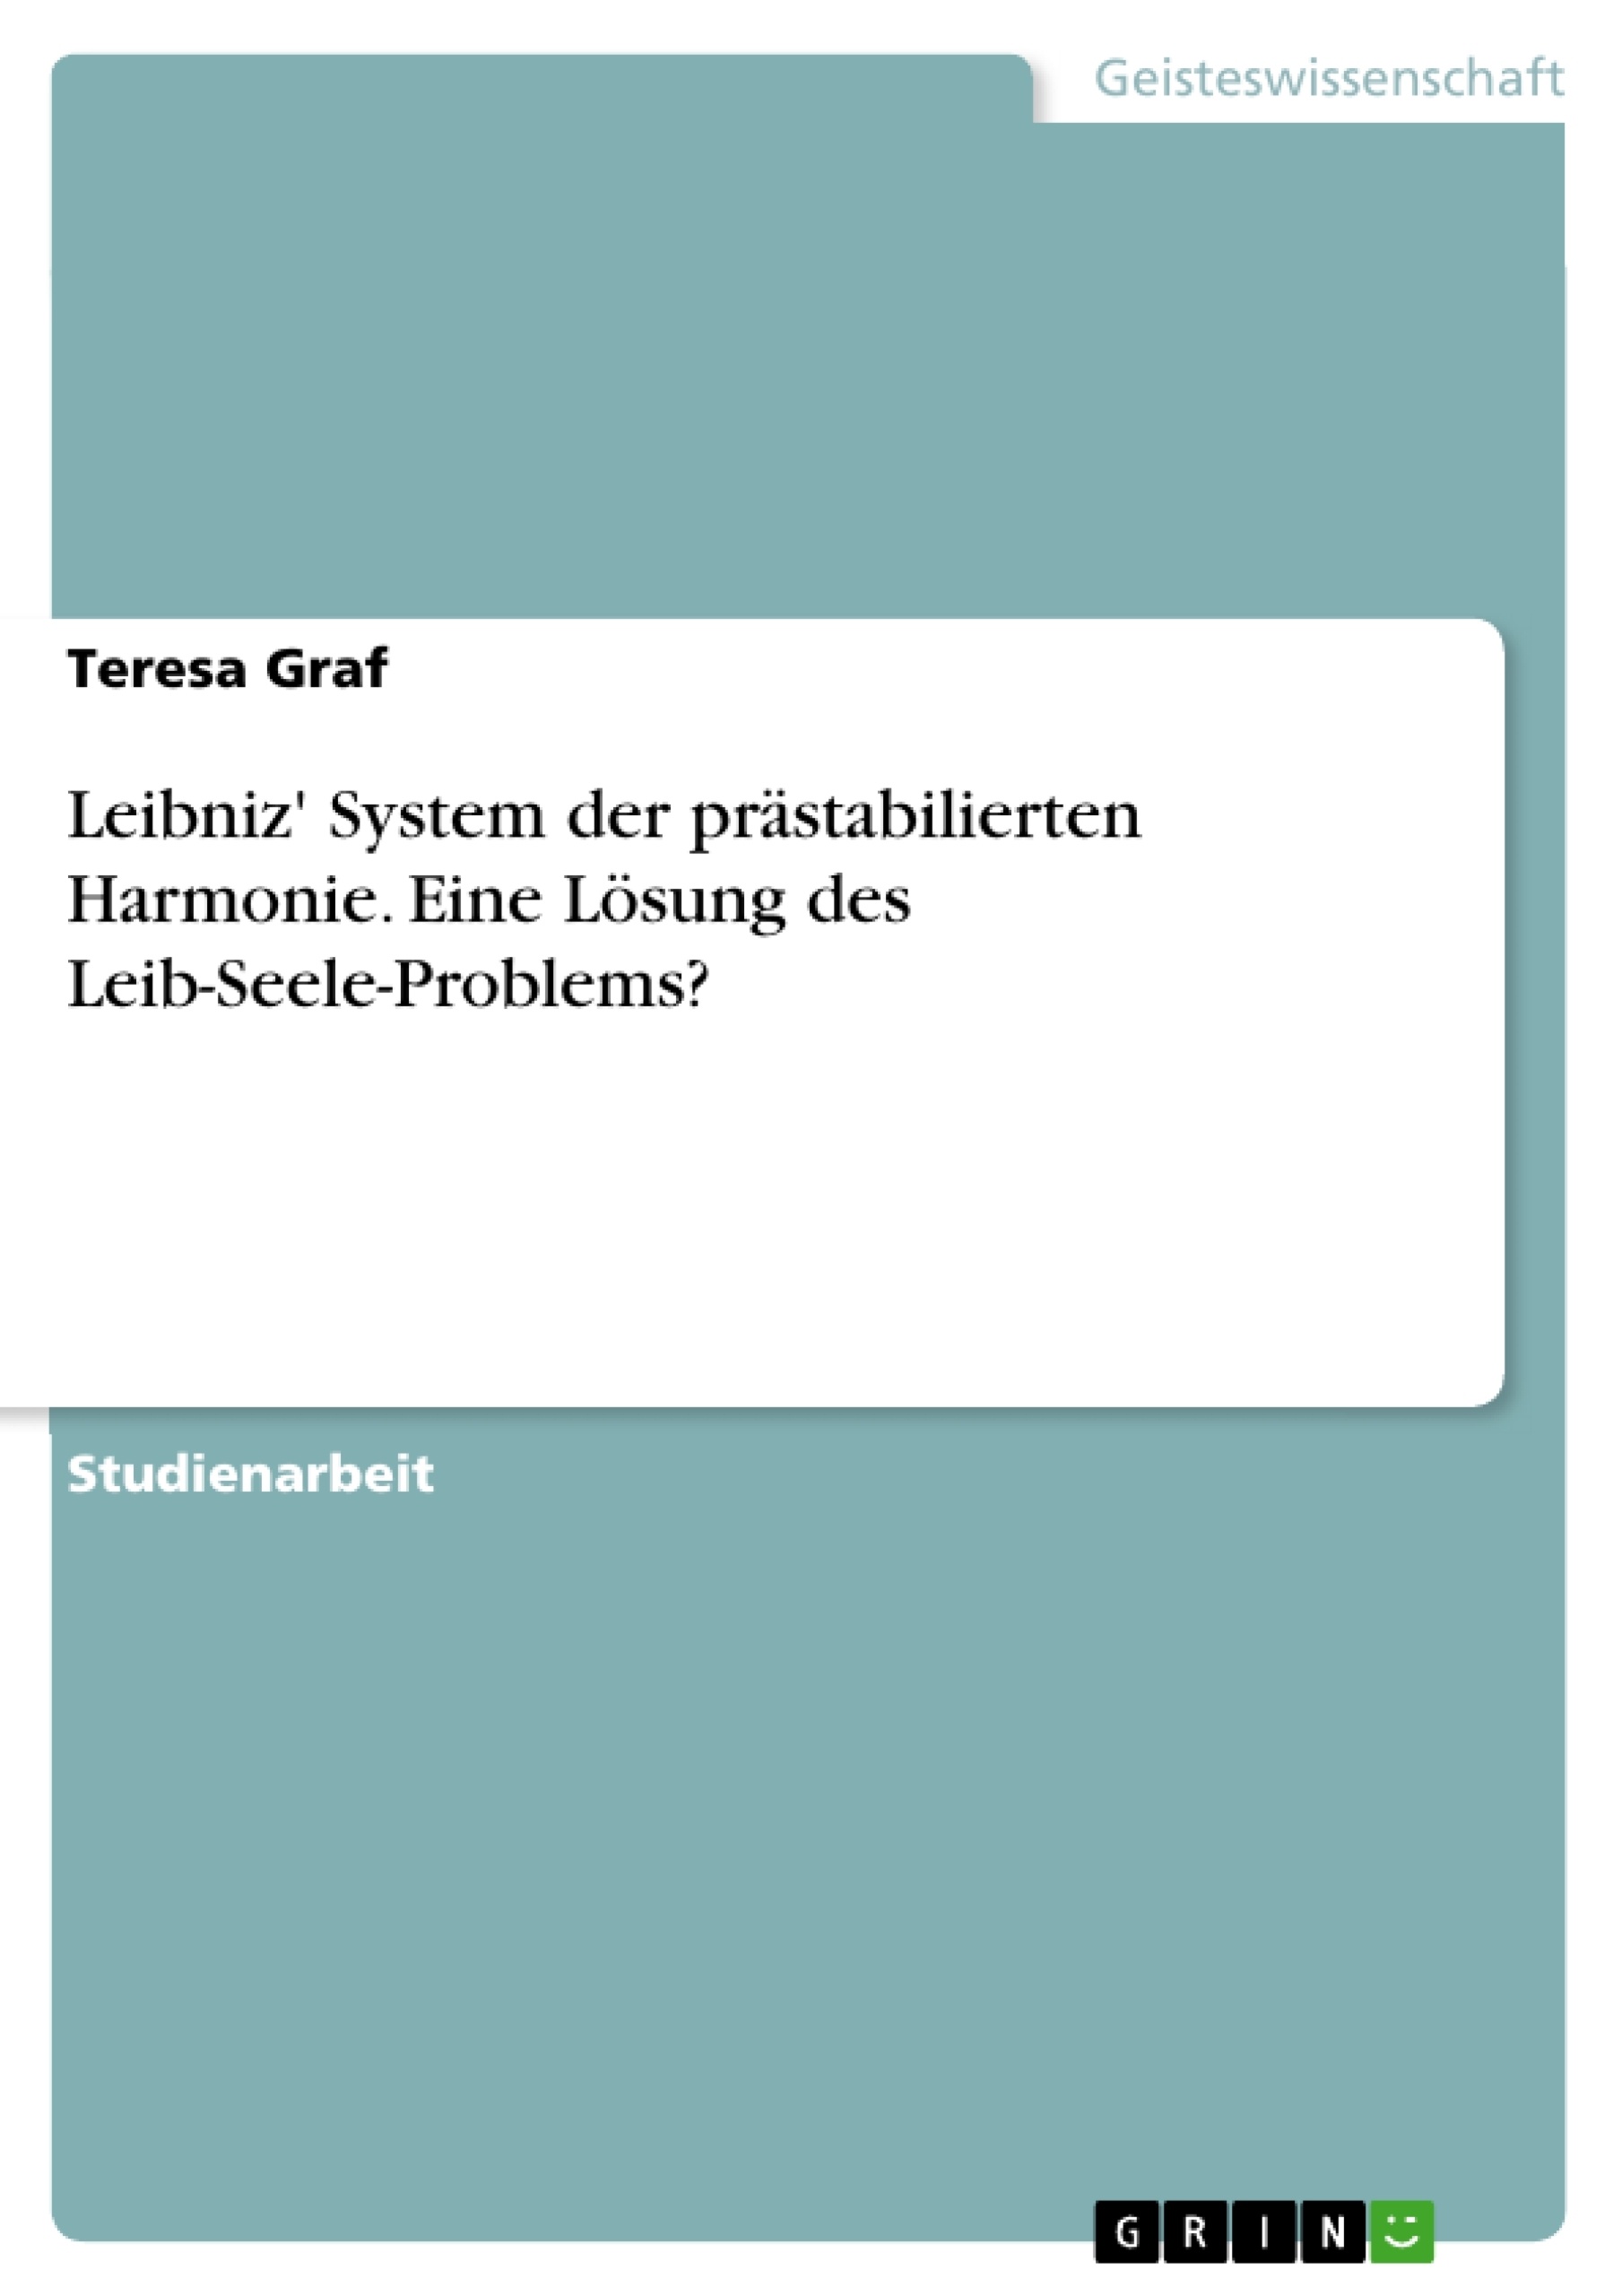 Title: Leibniz' System der prästabilierten Harmonie. Eine Lösung des Leib-Seele-Problems?